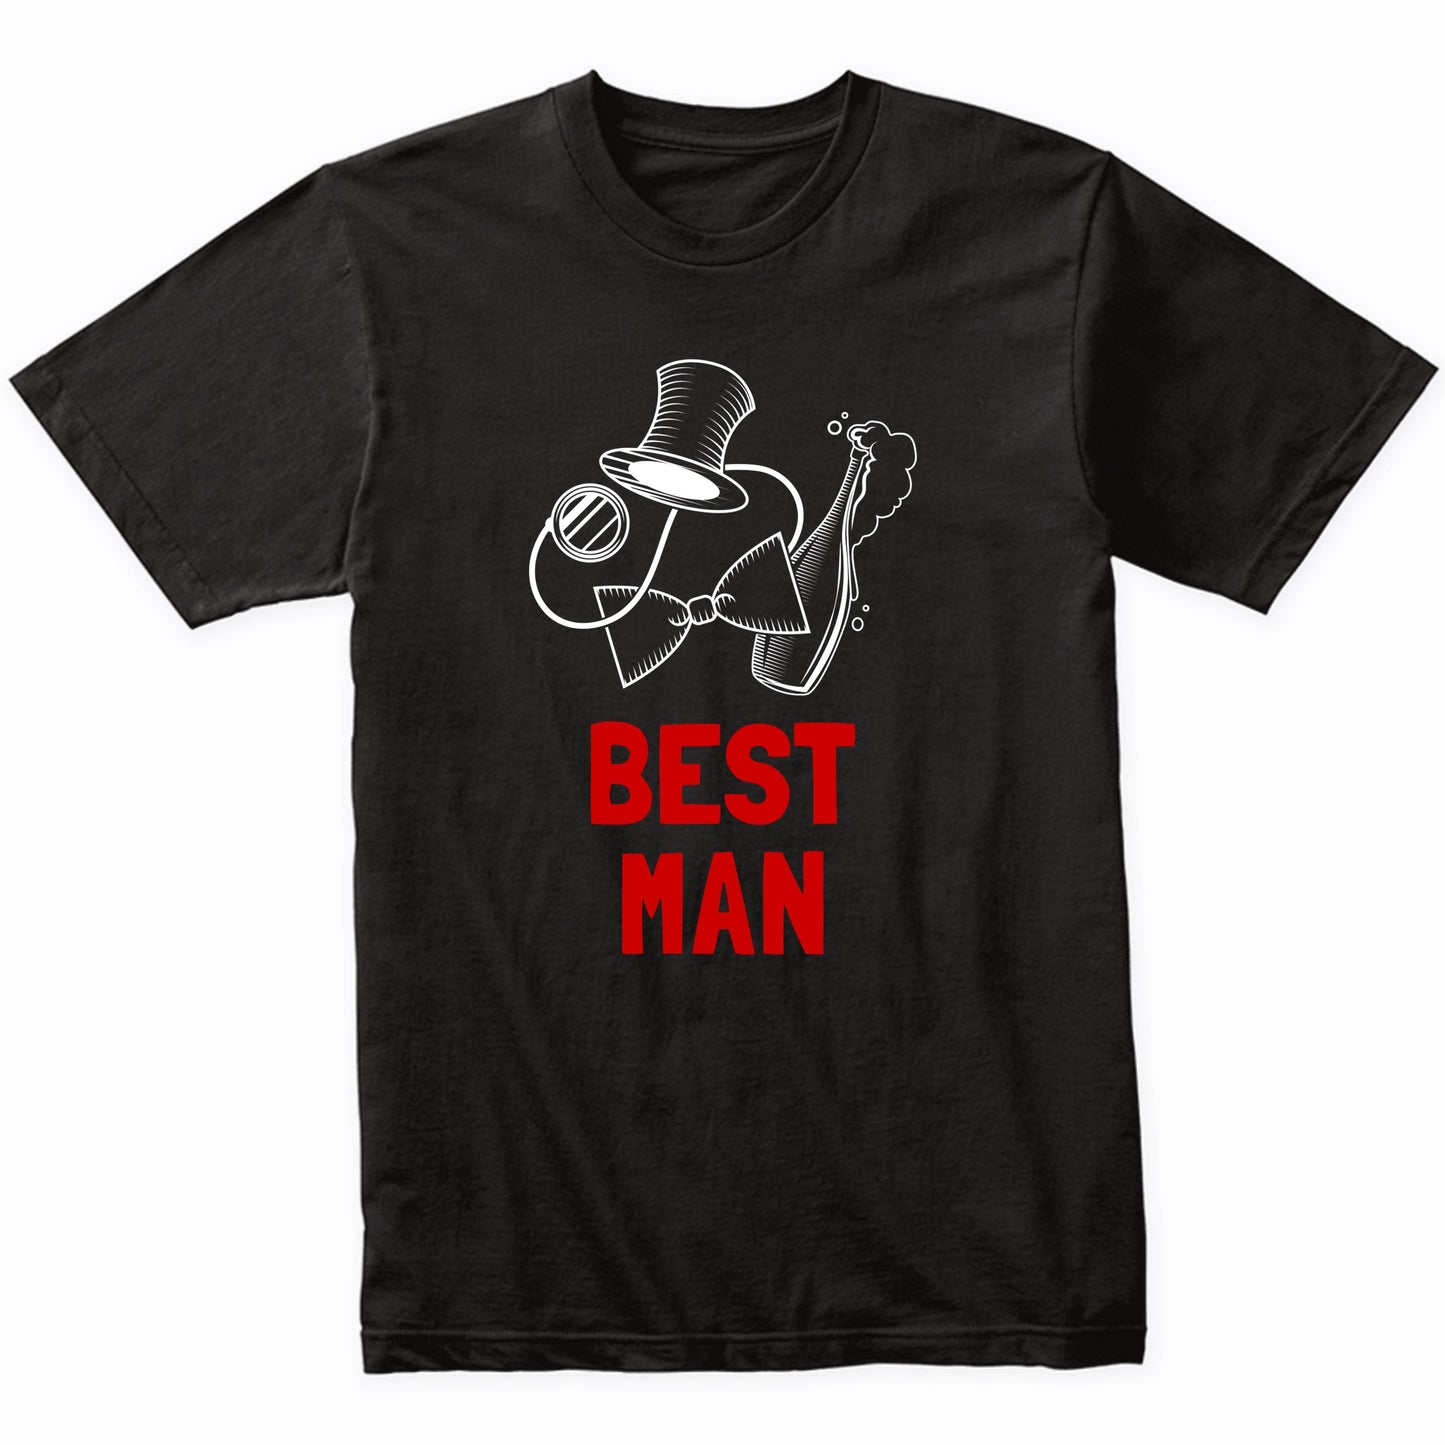 Bachelor Party Shirt - Best Man - Wedding T-Shirt